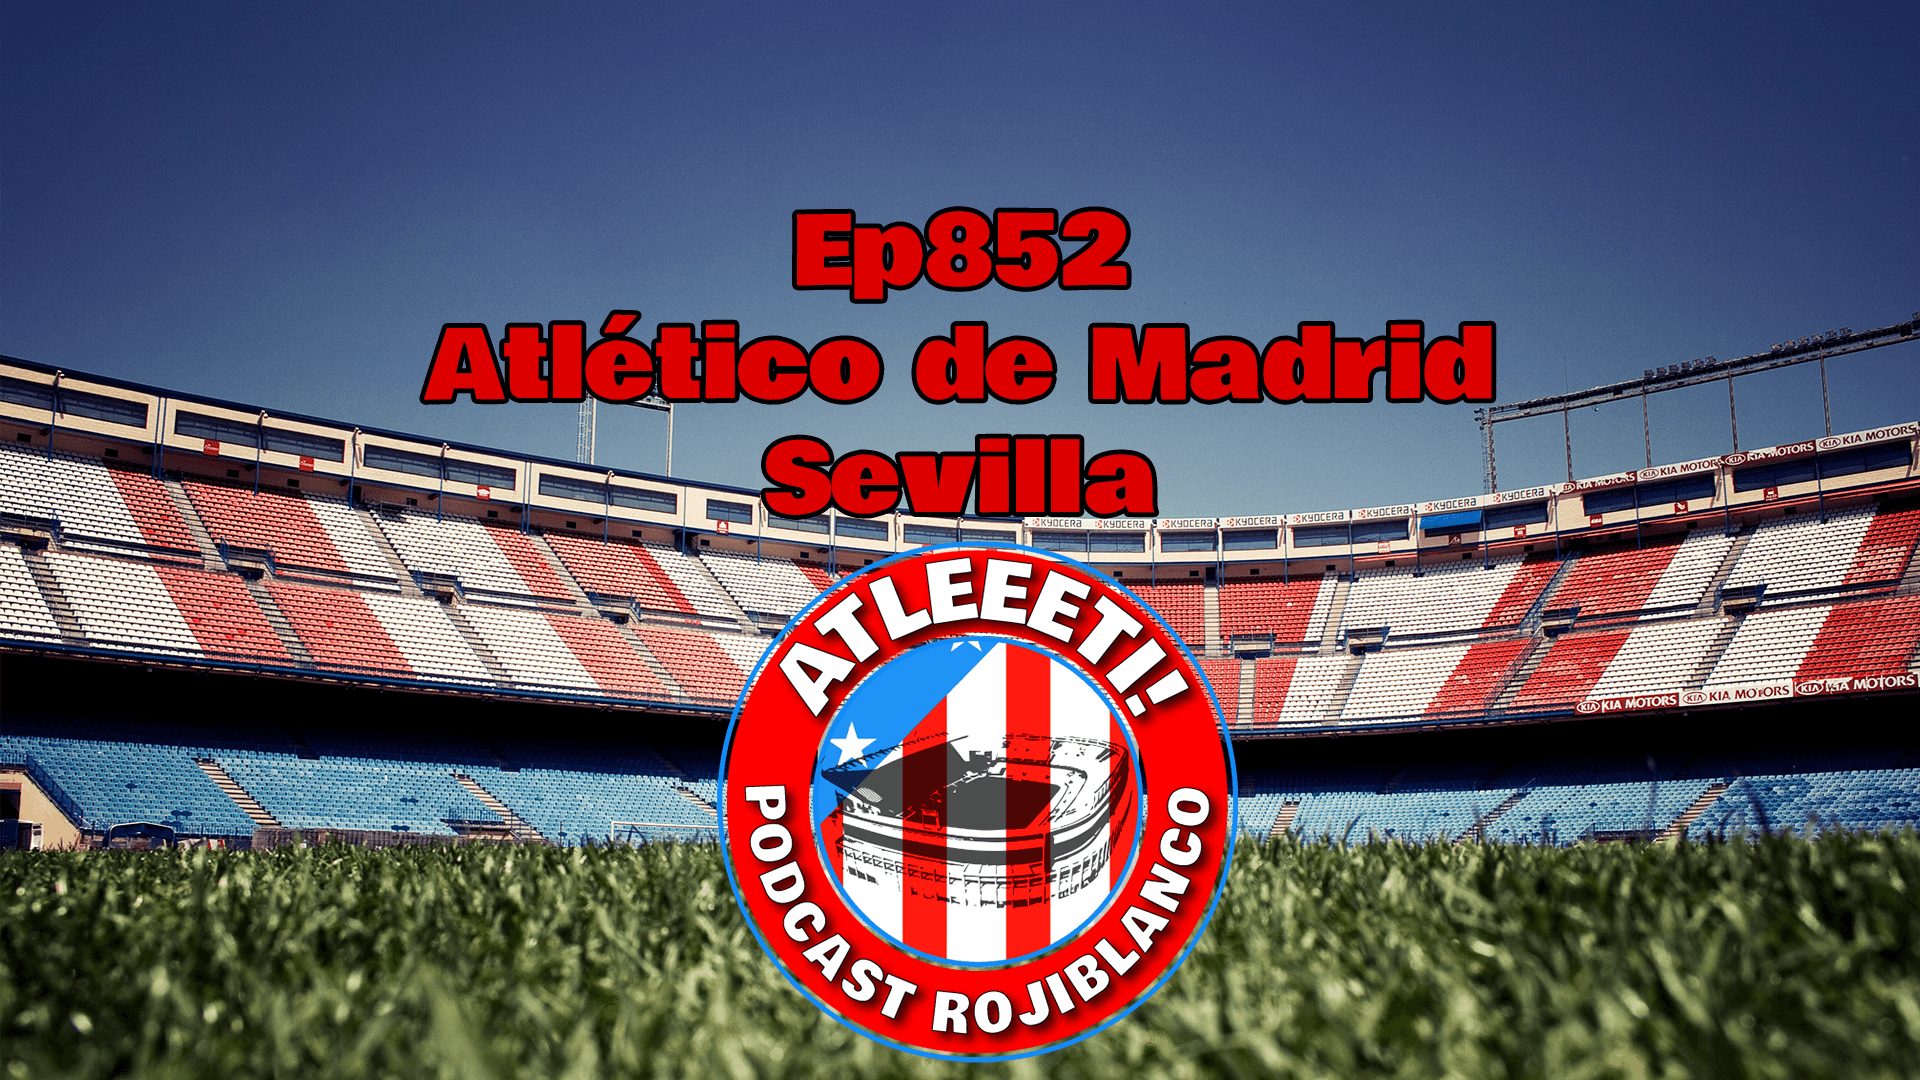 Ep852: Atlético de Madrid 6-1 Sevilla